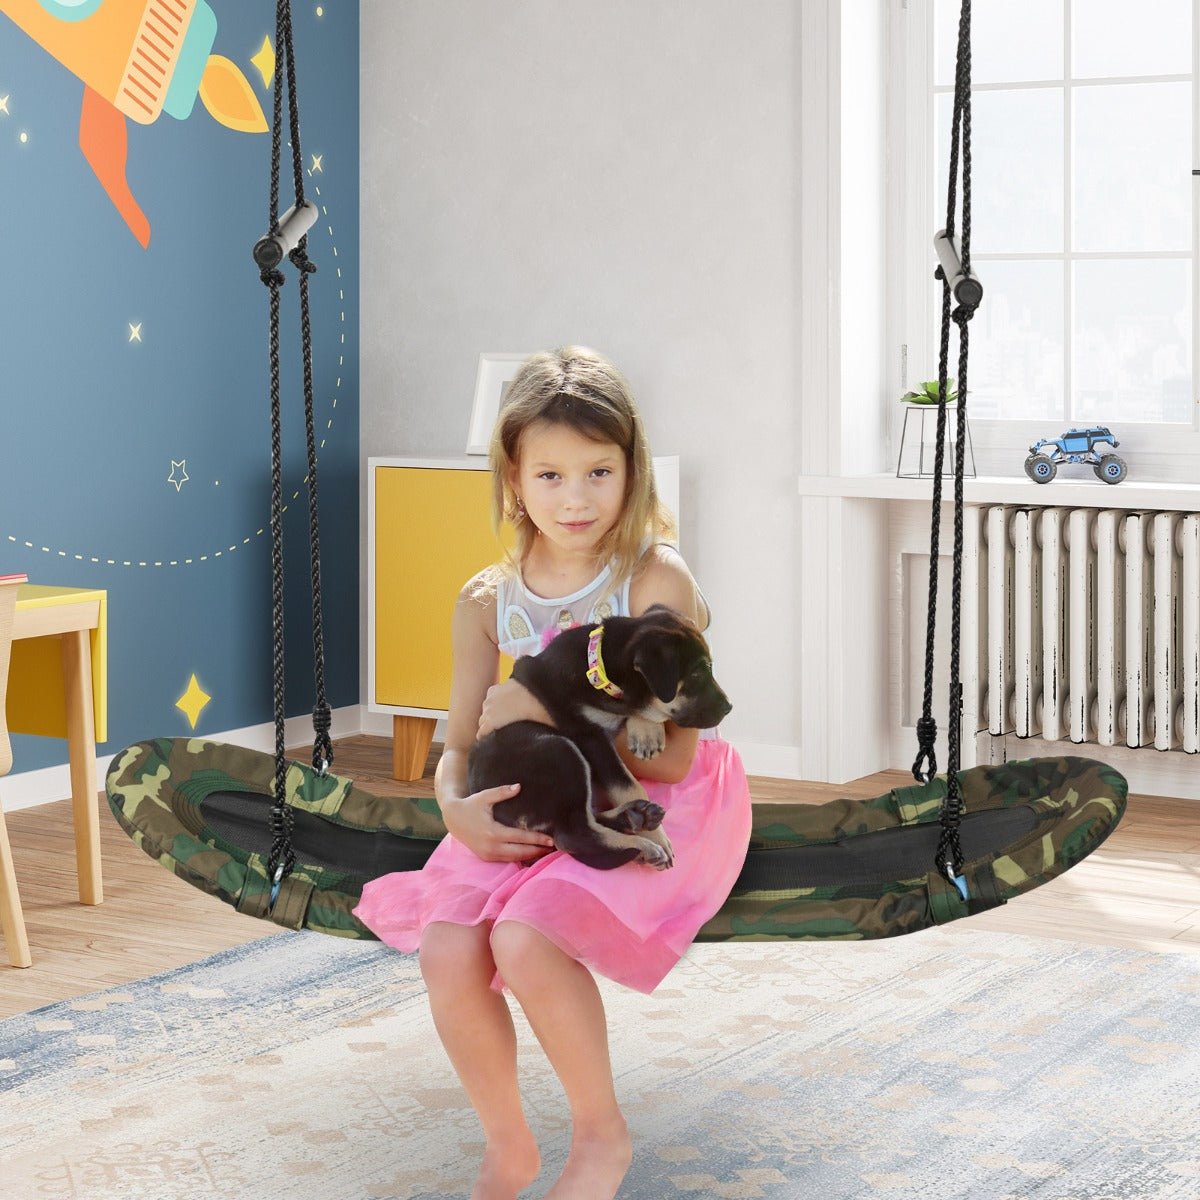 Adjustable Height Swing: Platform Design with Soft Handles for Kids